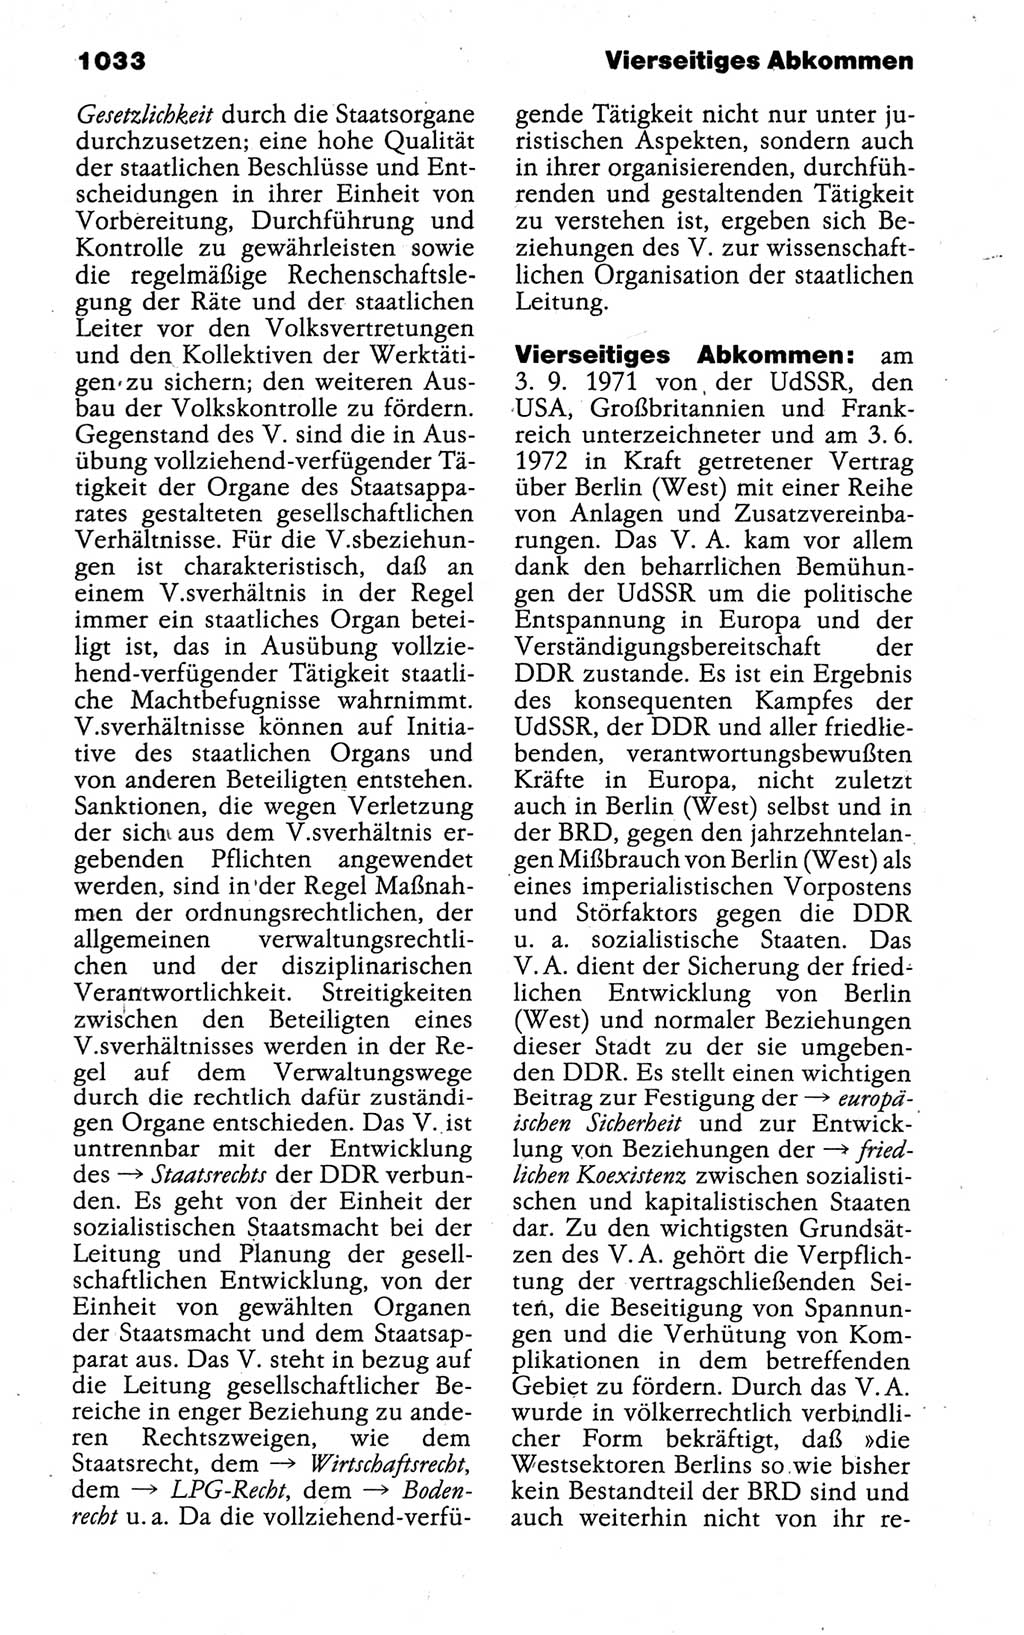 Kleines politisches Wörterbuch [Deutsche Demokratische Republik (DDR)] 1988, Seite 1033 (Kl. pol. Wb. DDR 1988, S. 1033)